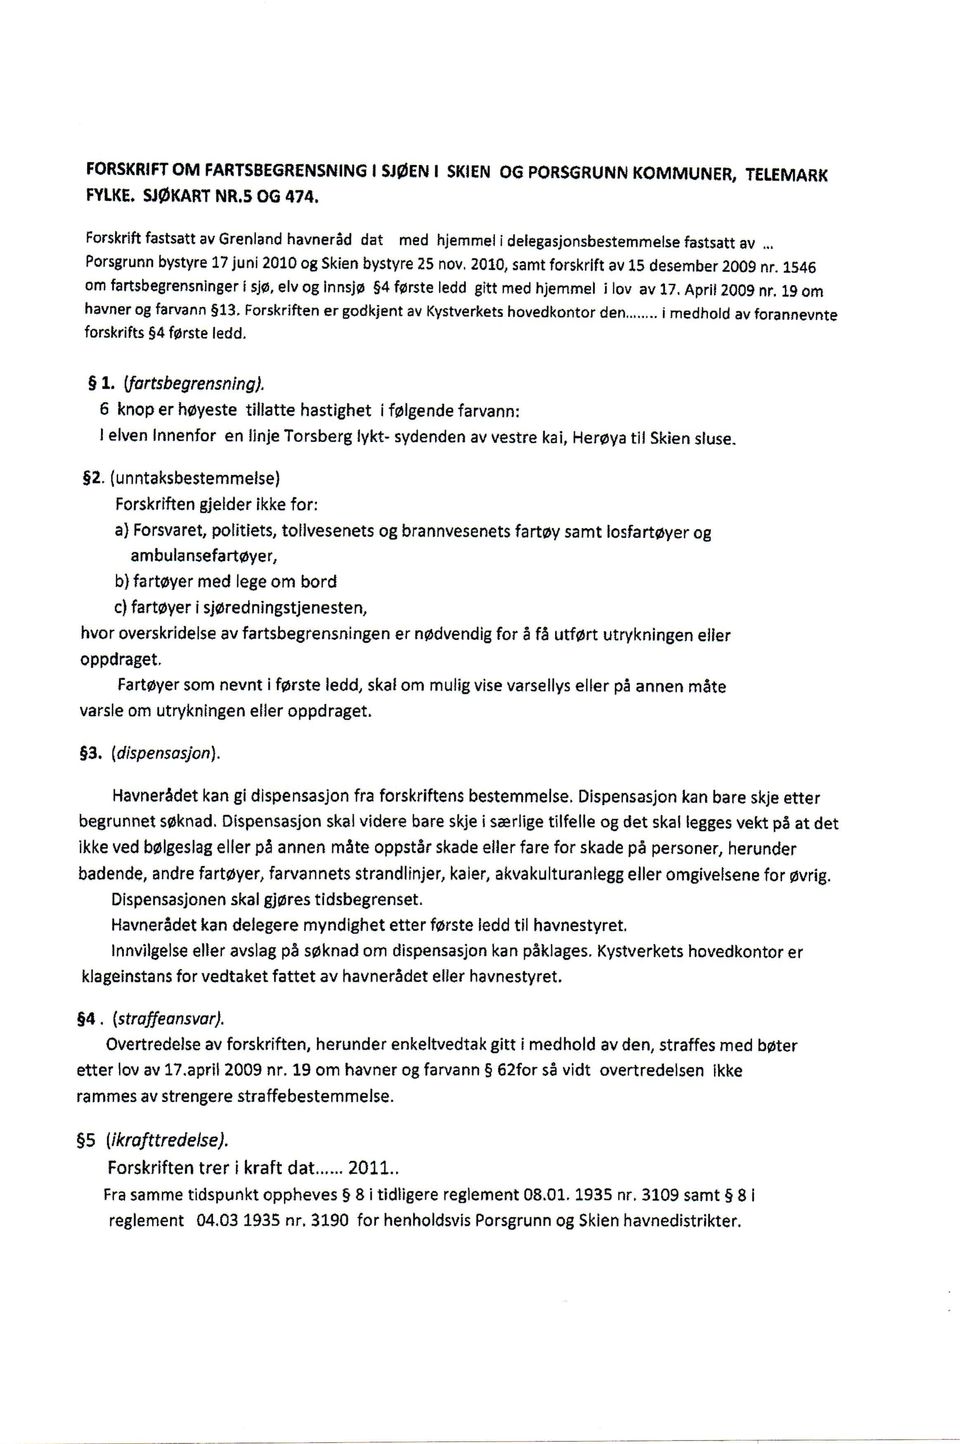 April 2009 nr. 19 om havner og farvann 13. Forskriften er godkjent av Kystverkets hovedkontor den i medhold av forannevnte forskrifts 4 f0rste ledd. 1. (fartsbegrensning).